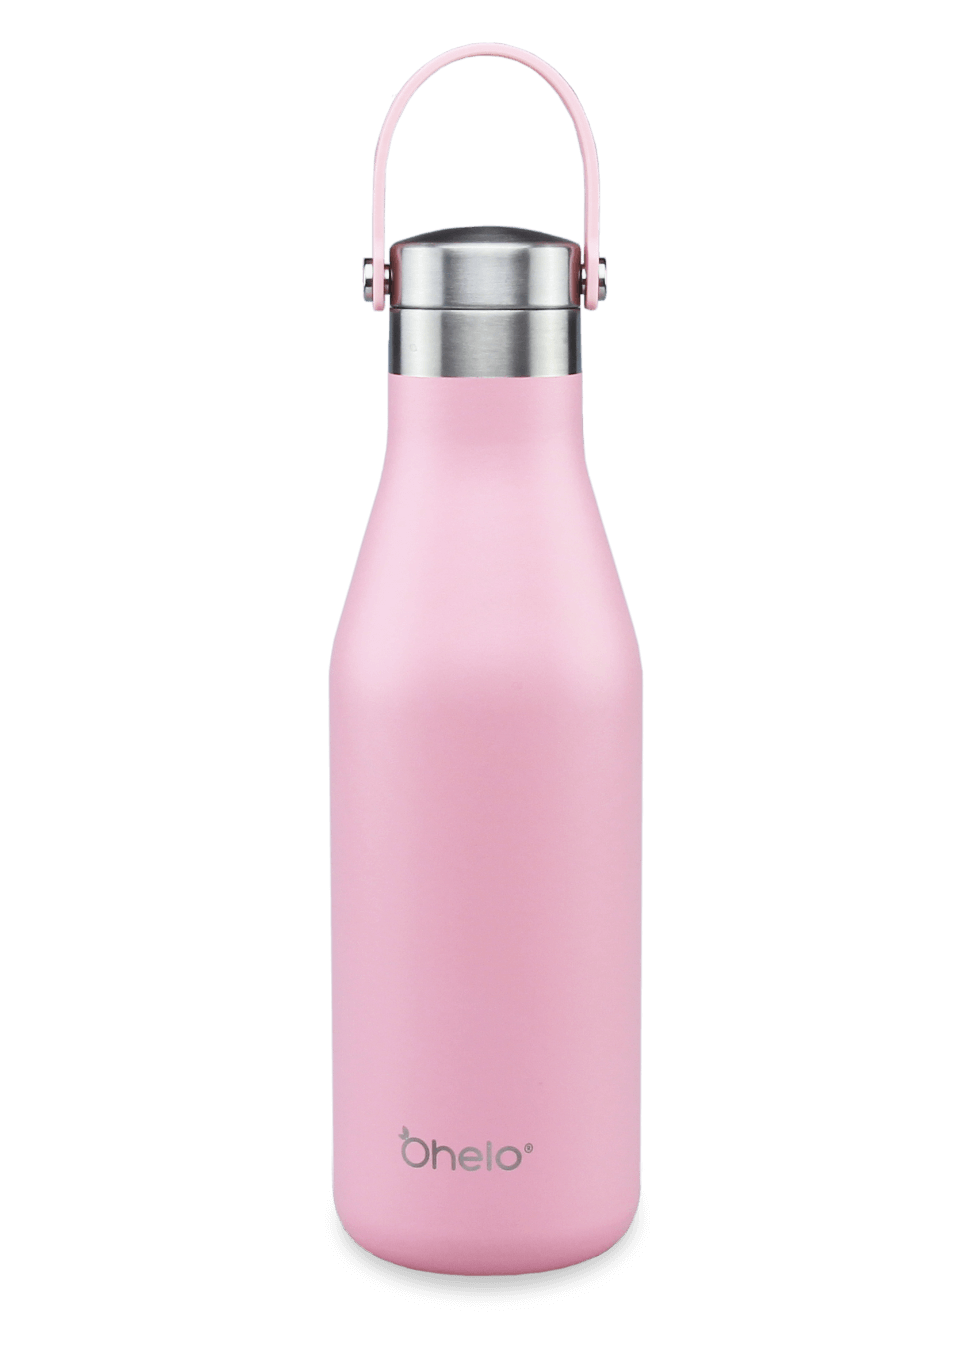 Ohelo leak proof stainless steel bottle pink